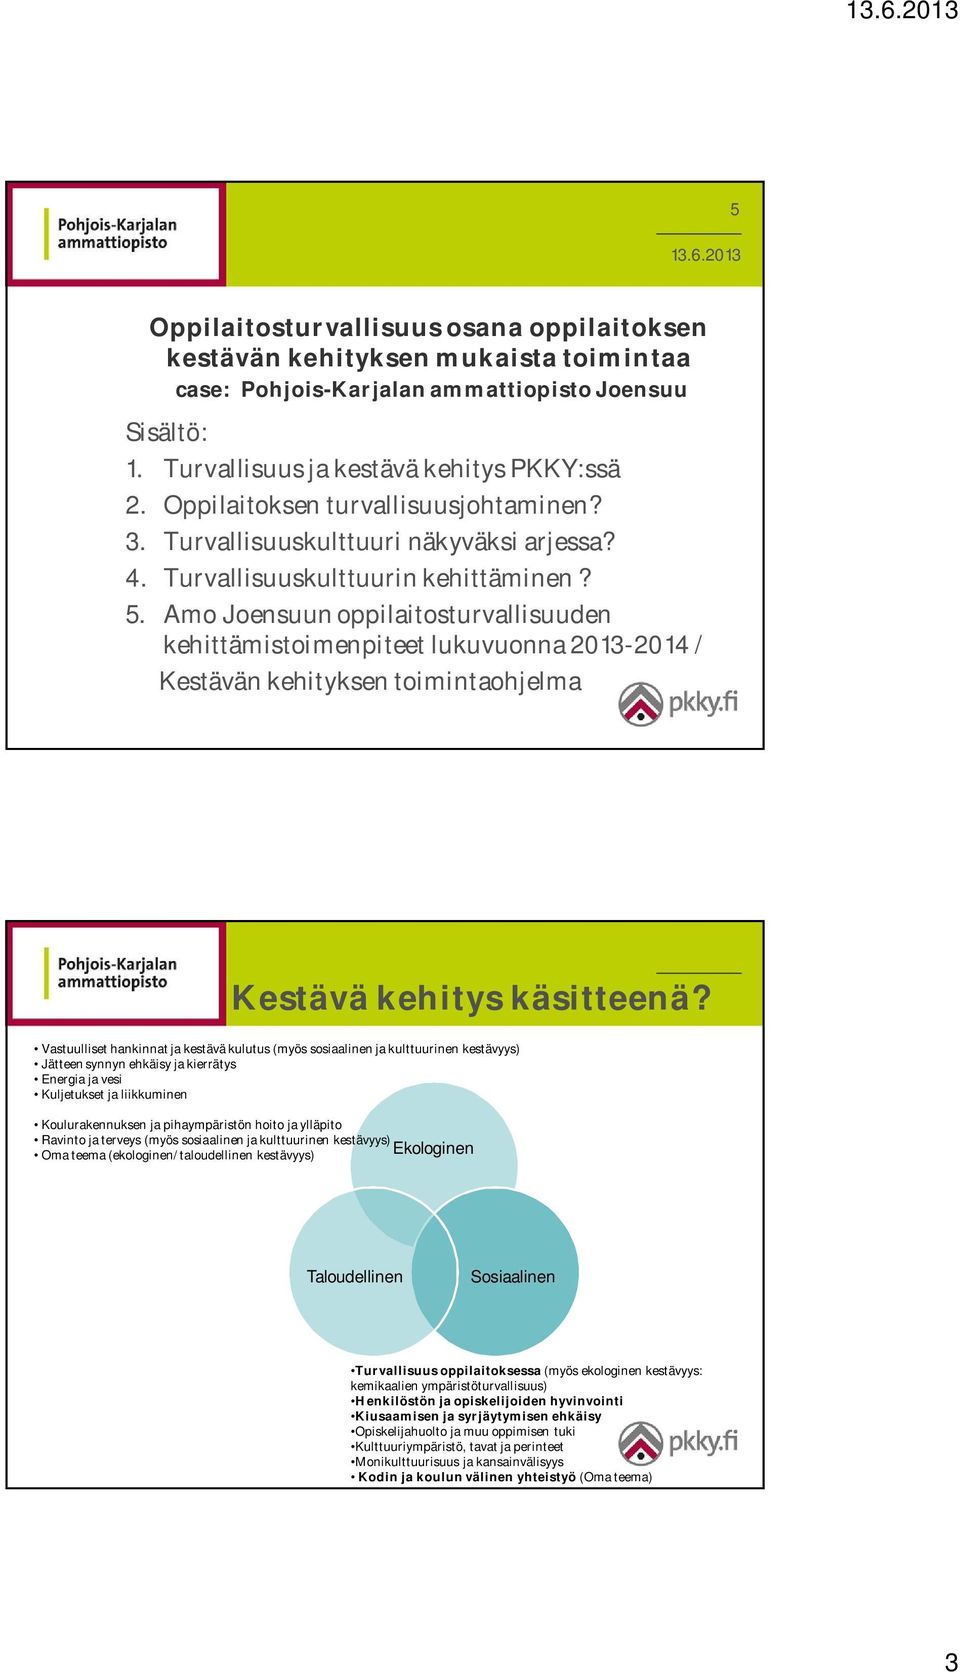 Amo Joensuun oppilaitosturvallisuuden kehittämistoimenpiteet lukuvuonna 2013-2014 / Kestävän kehityksen toimintaohjelma Kestävä kehitys käsitteenä?